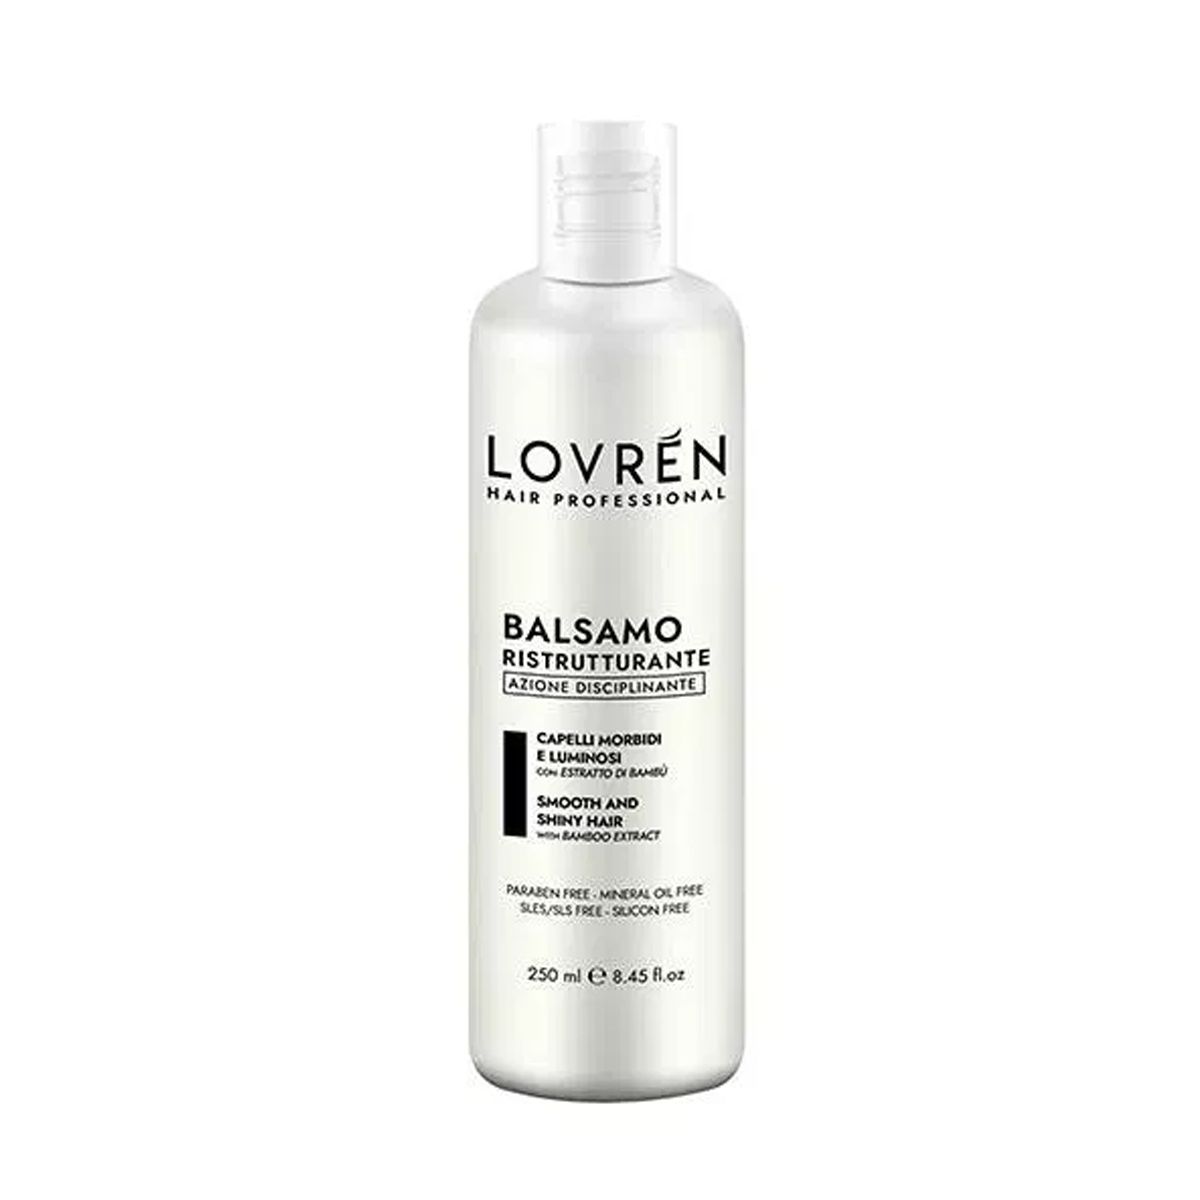 Lovren Hair Professional Balsamo Ristrutturante 250ml